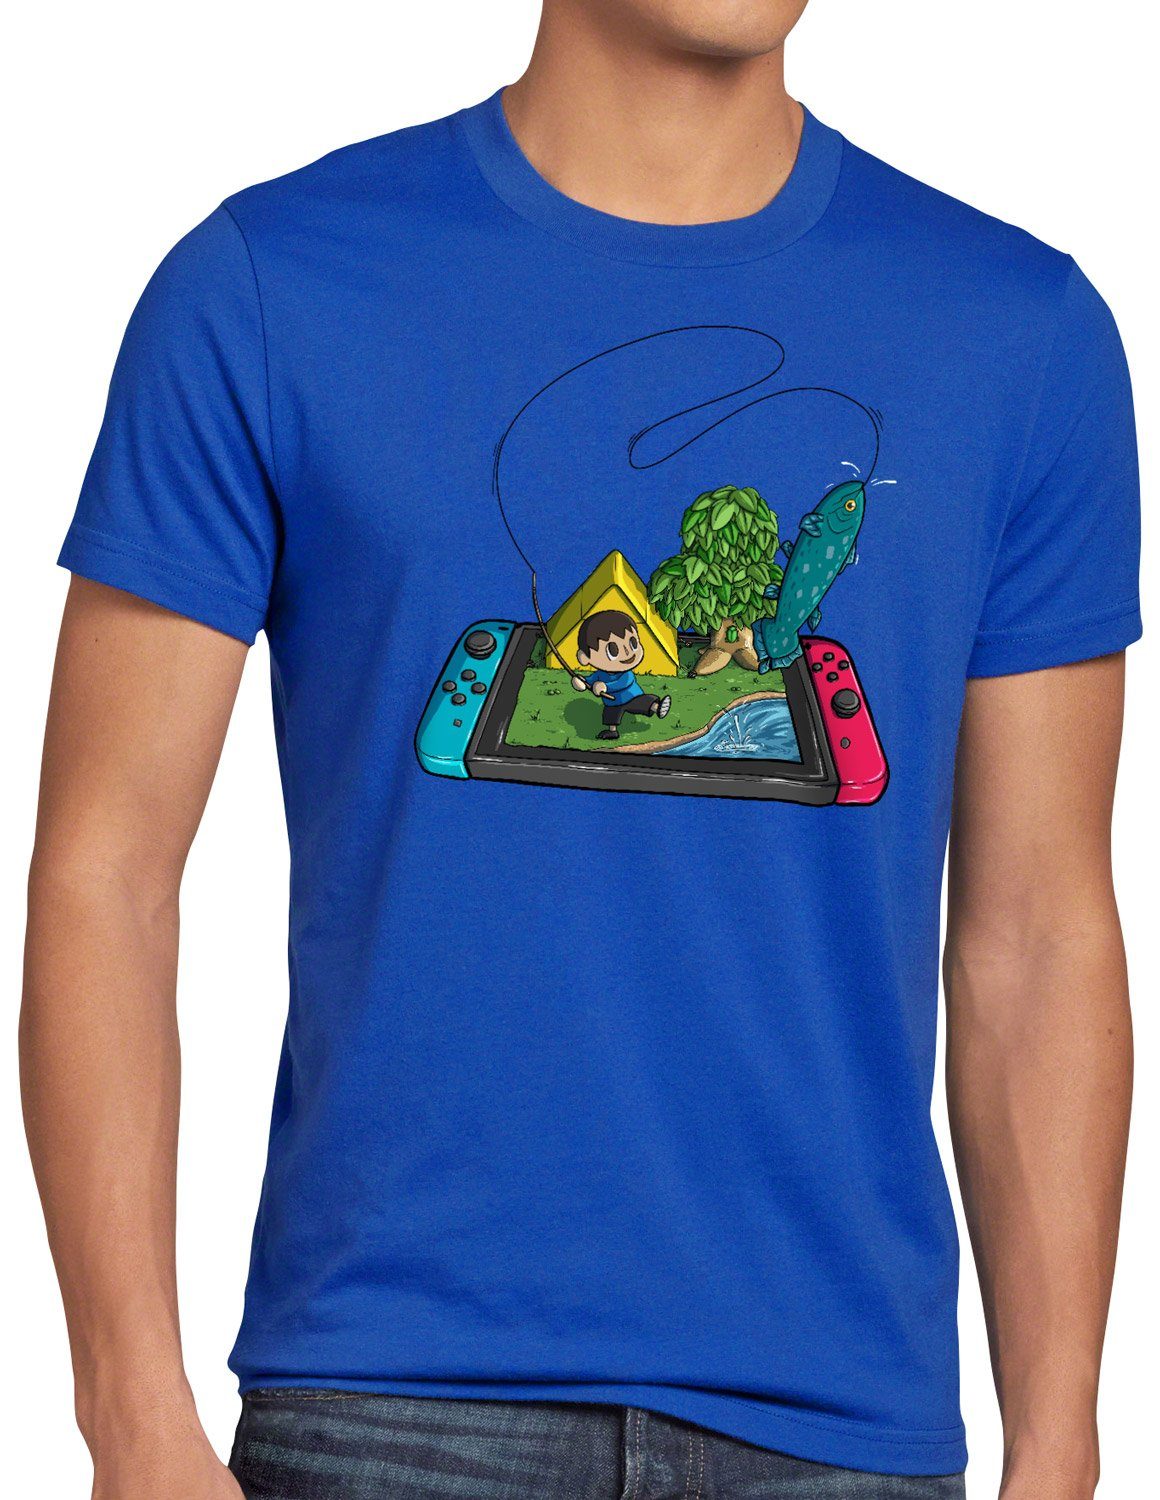 Crossing videospiel blau Herren switch horizons Fisch style3 animal T-Shirt Print-Shirt